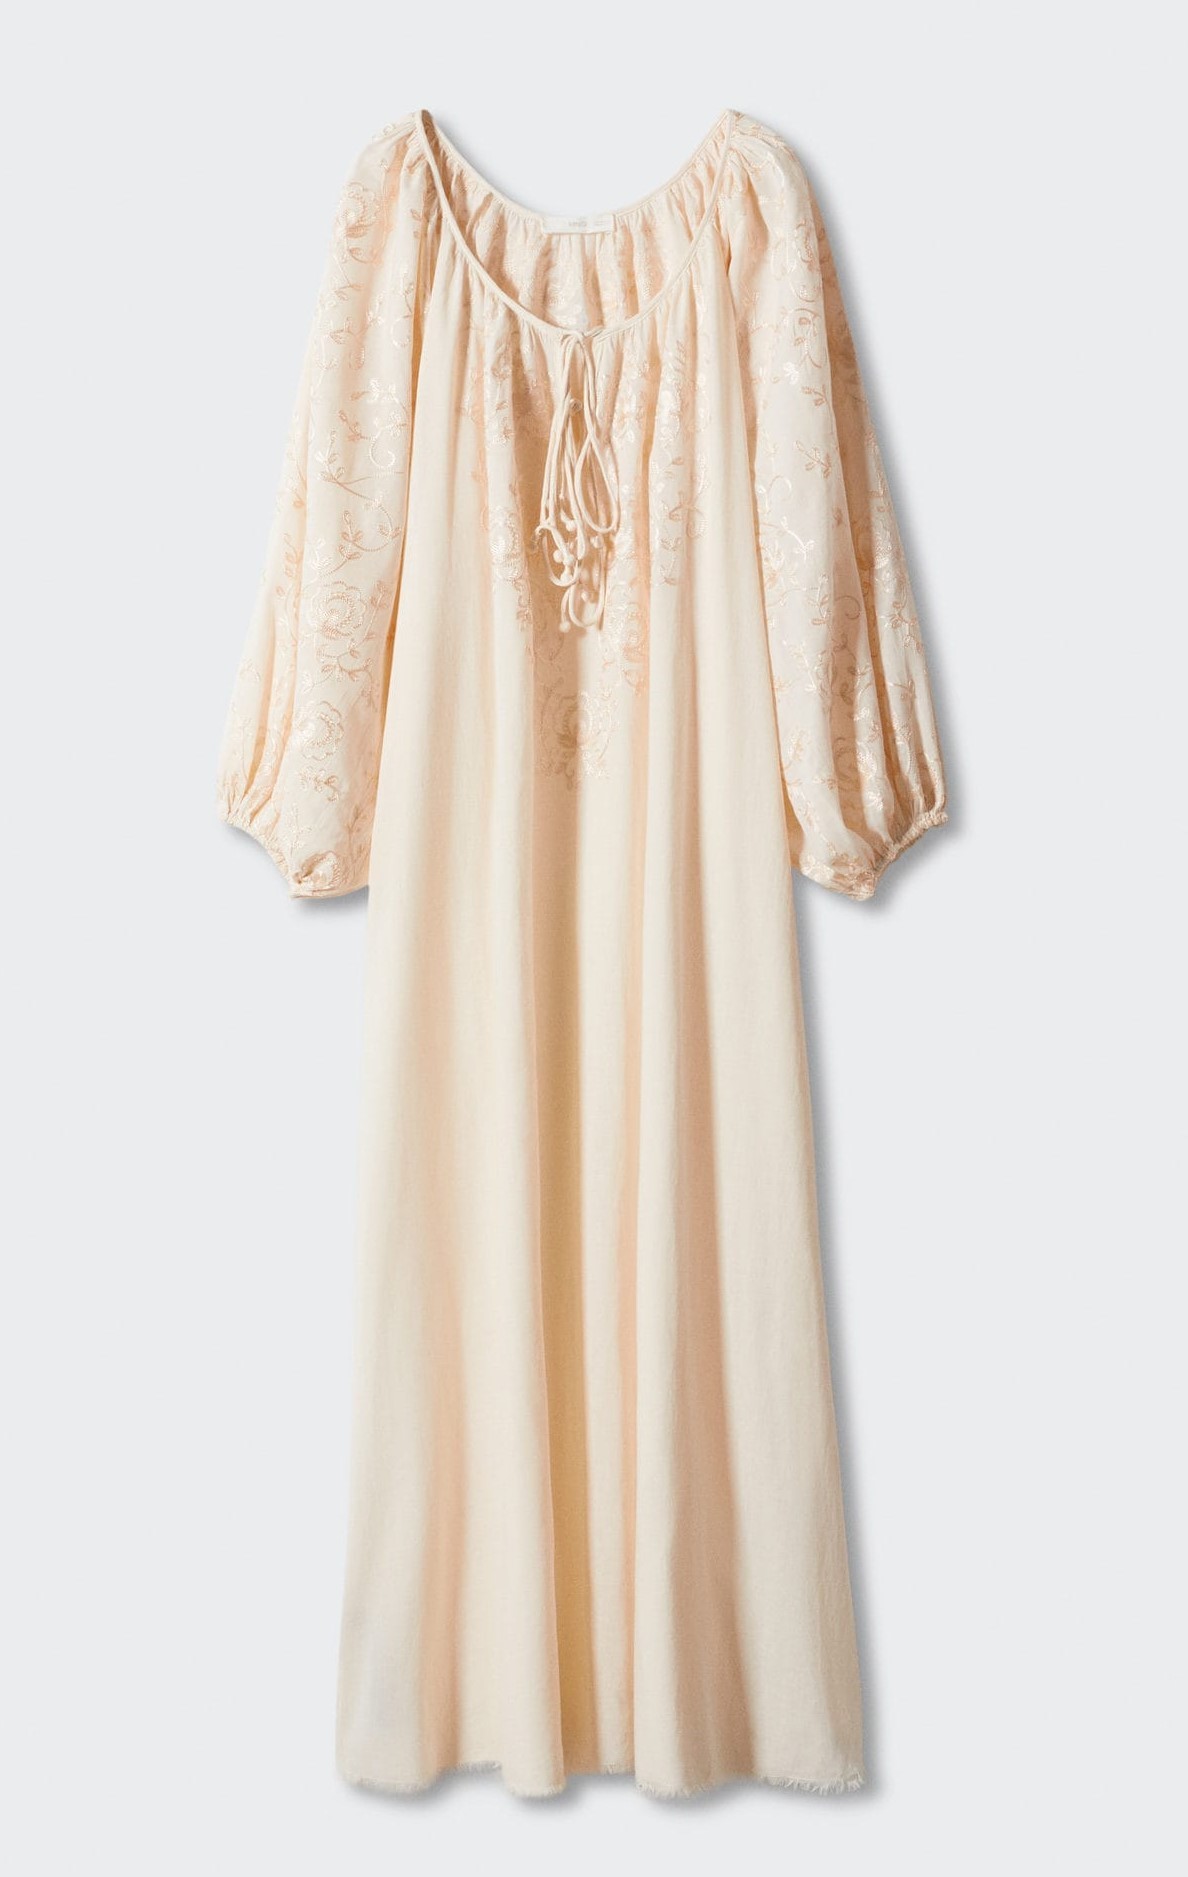 Vestido largo color crudo, de Mango (69,99 euros).